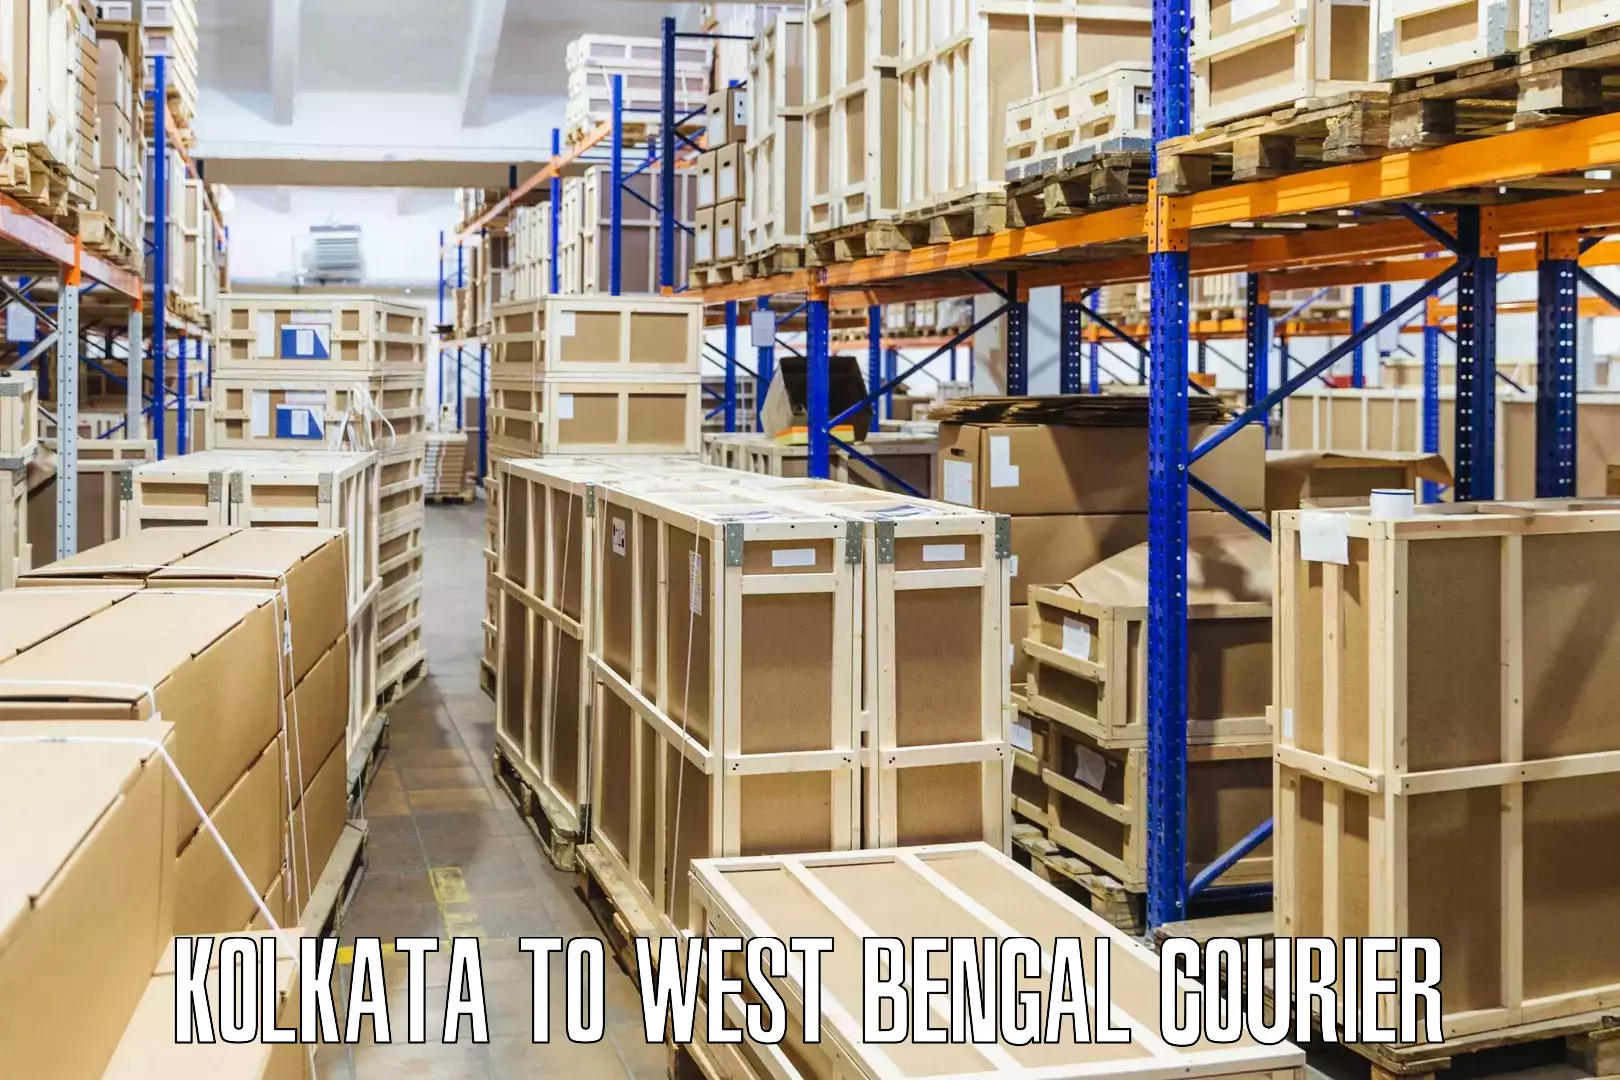 Courier service comparison Kolkata to Malda